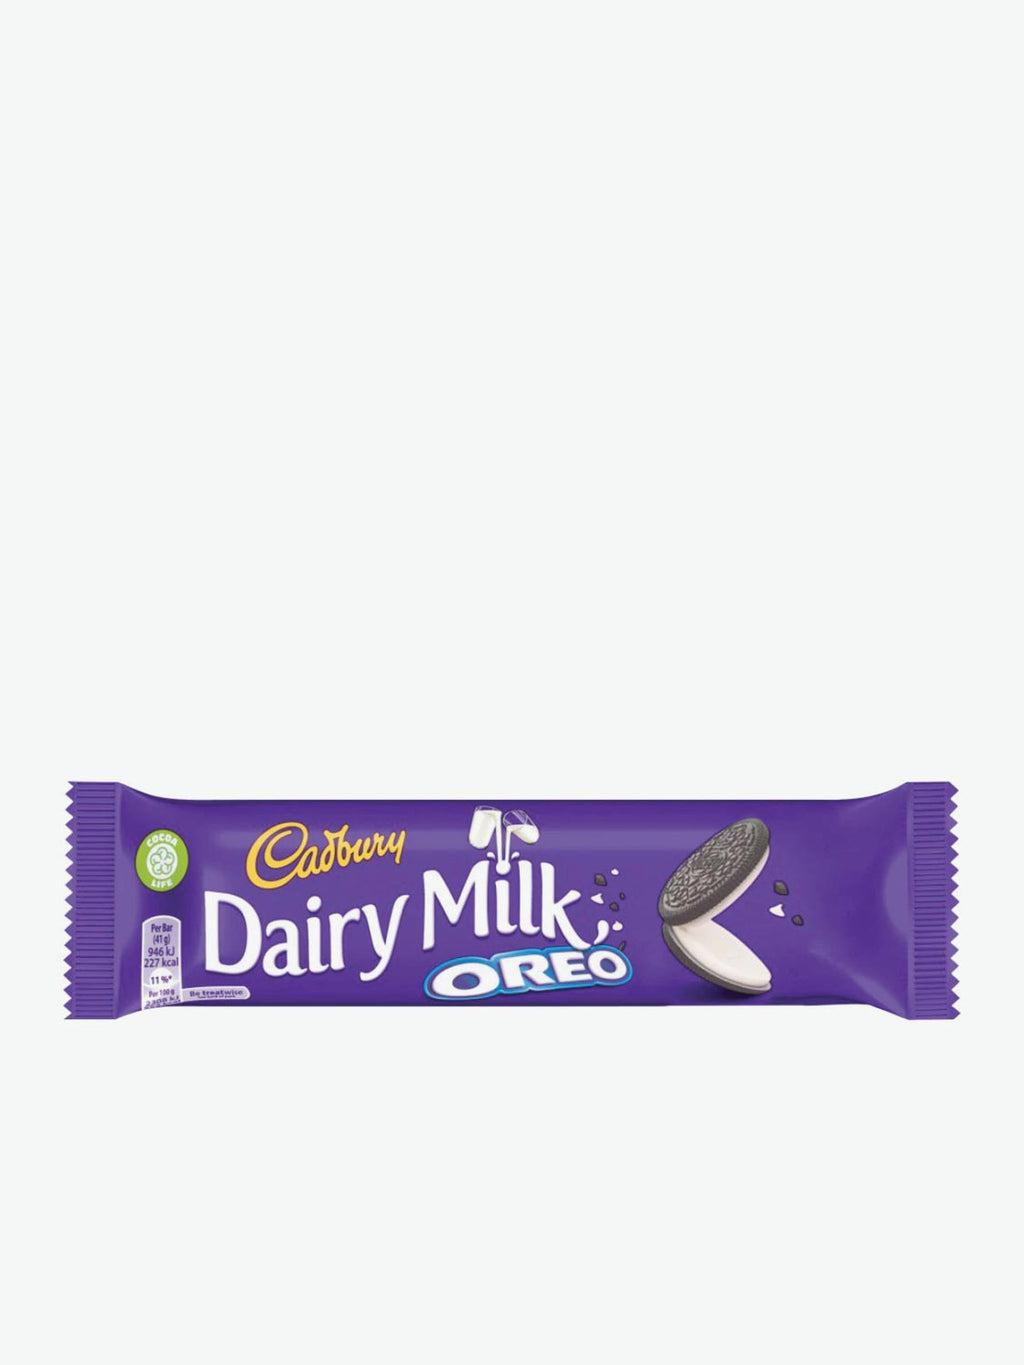 Cadbury Dairy Milk Oreo | A